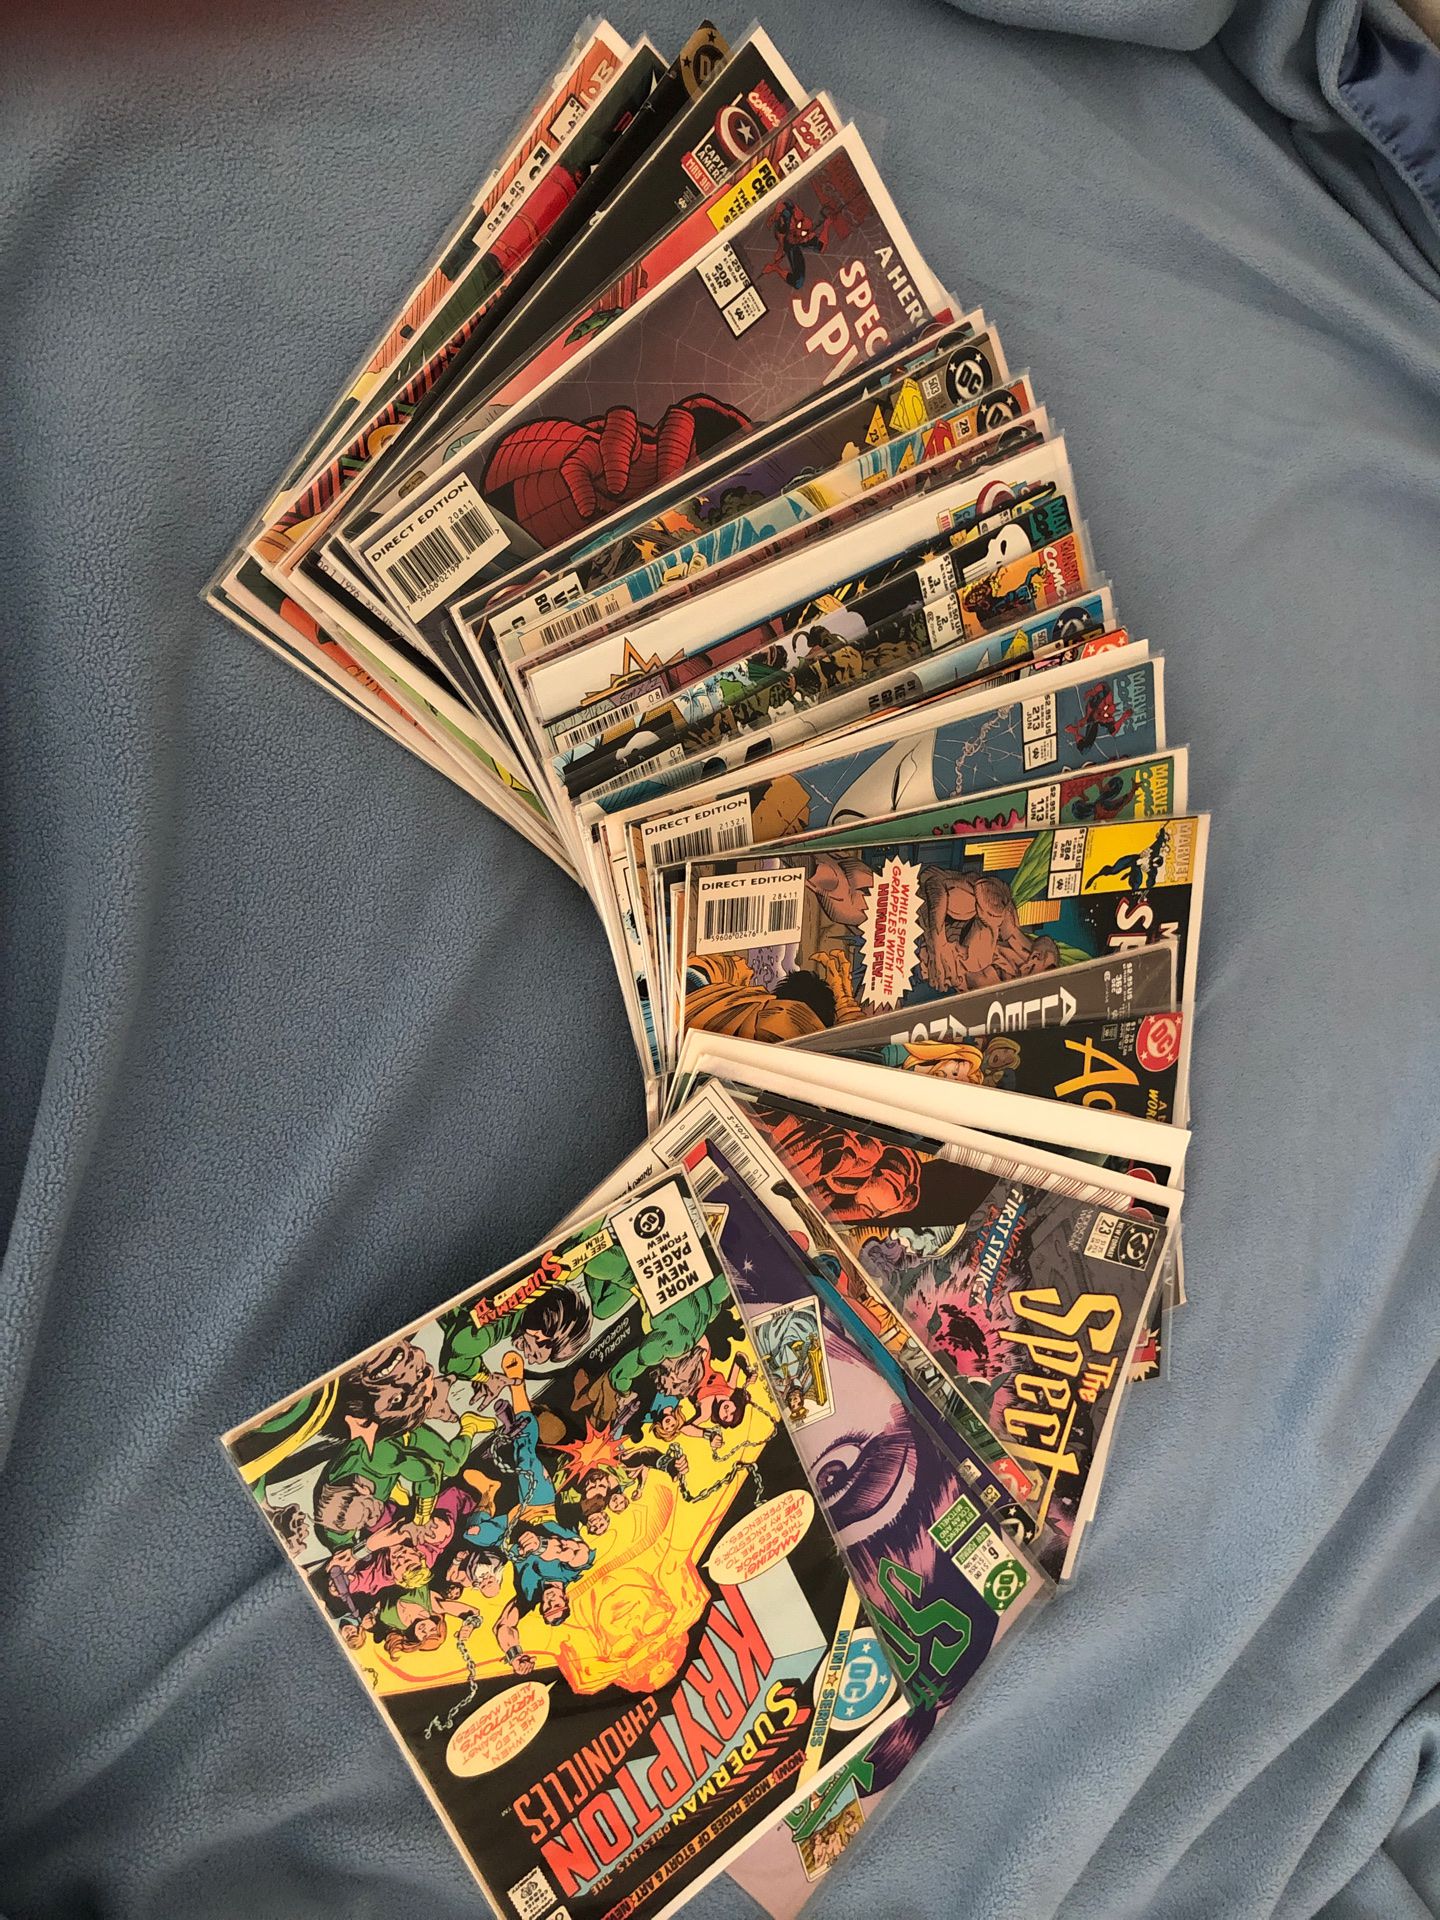 44 Comics